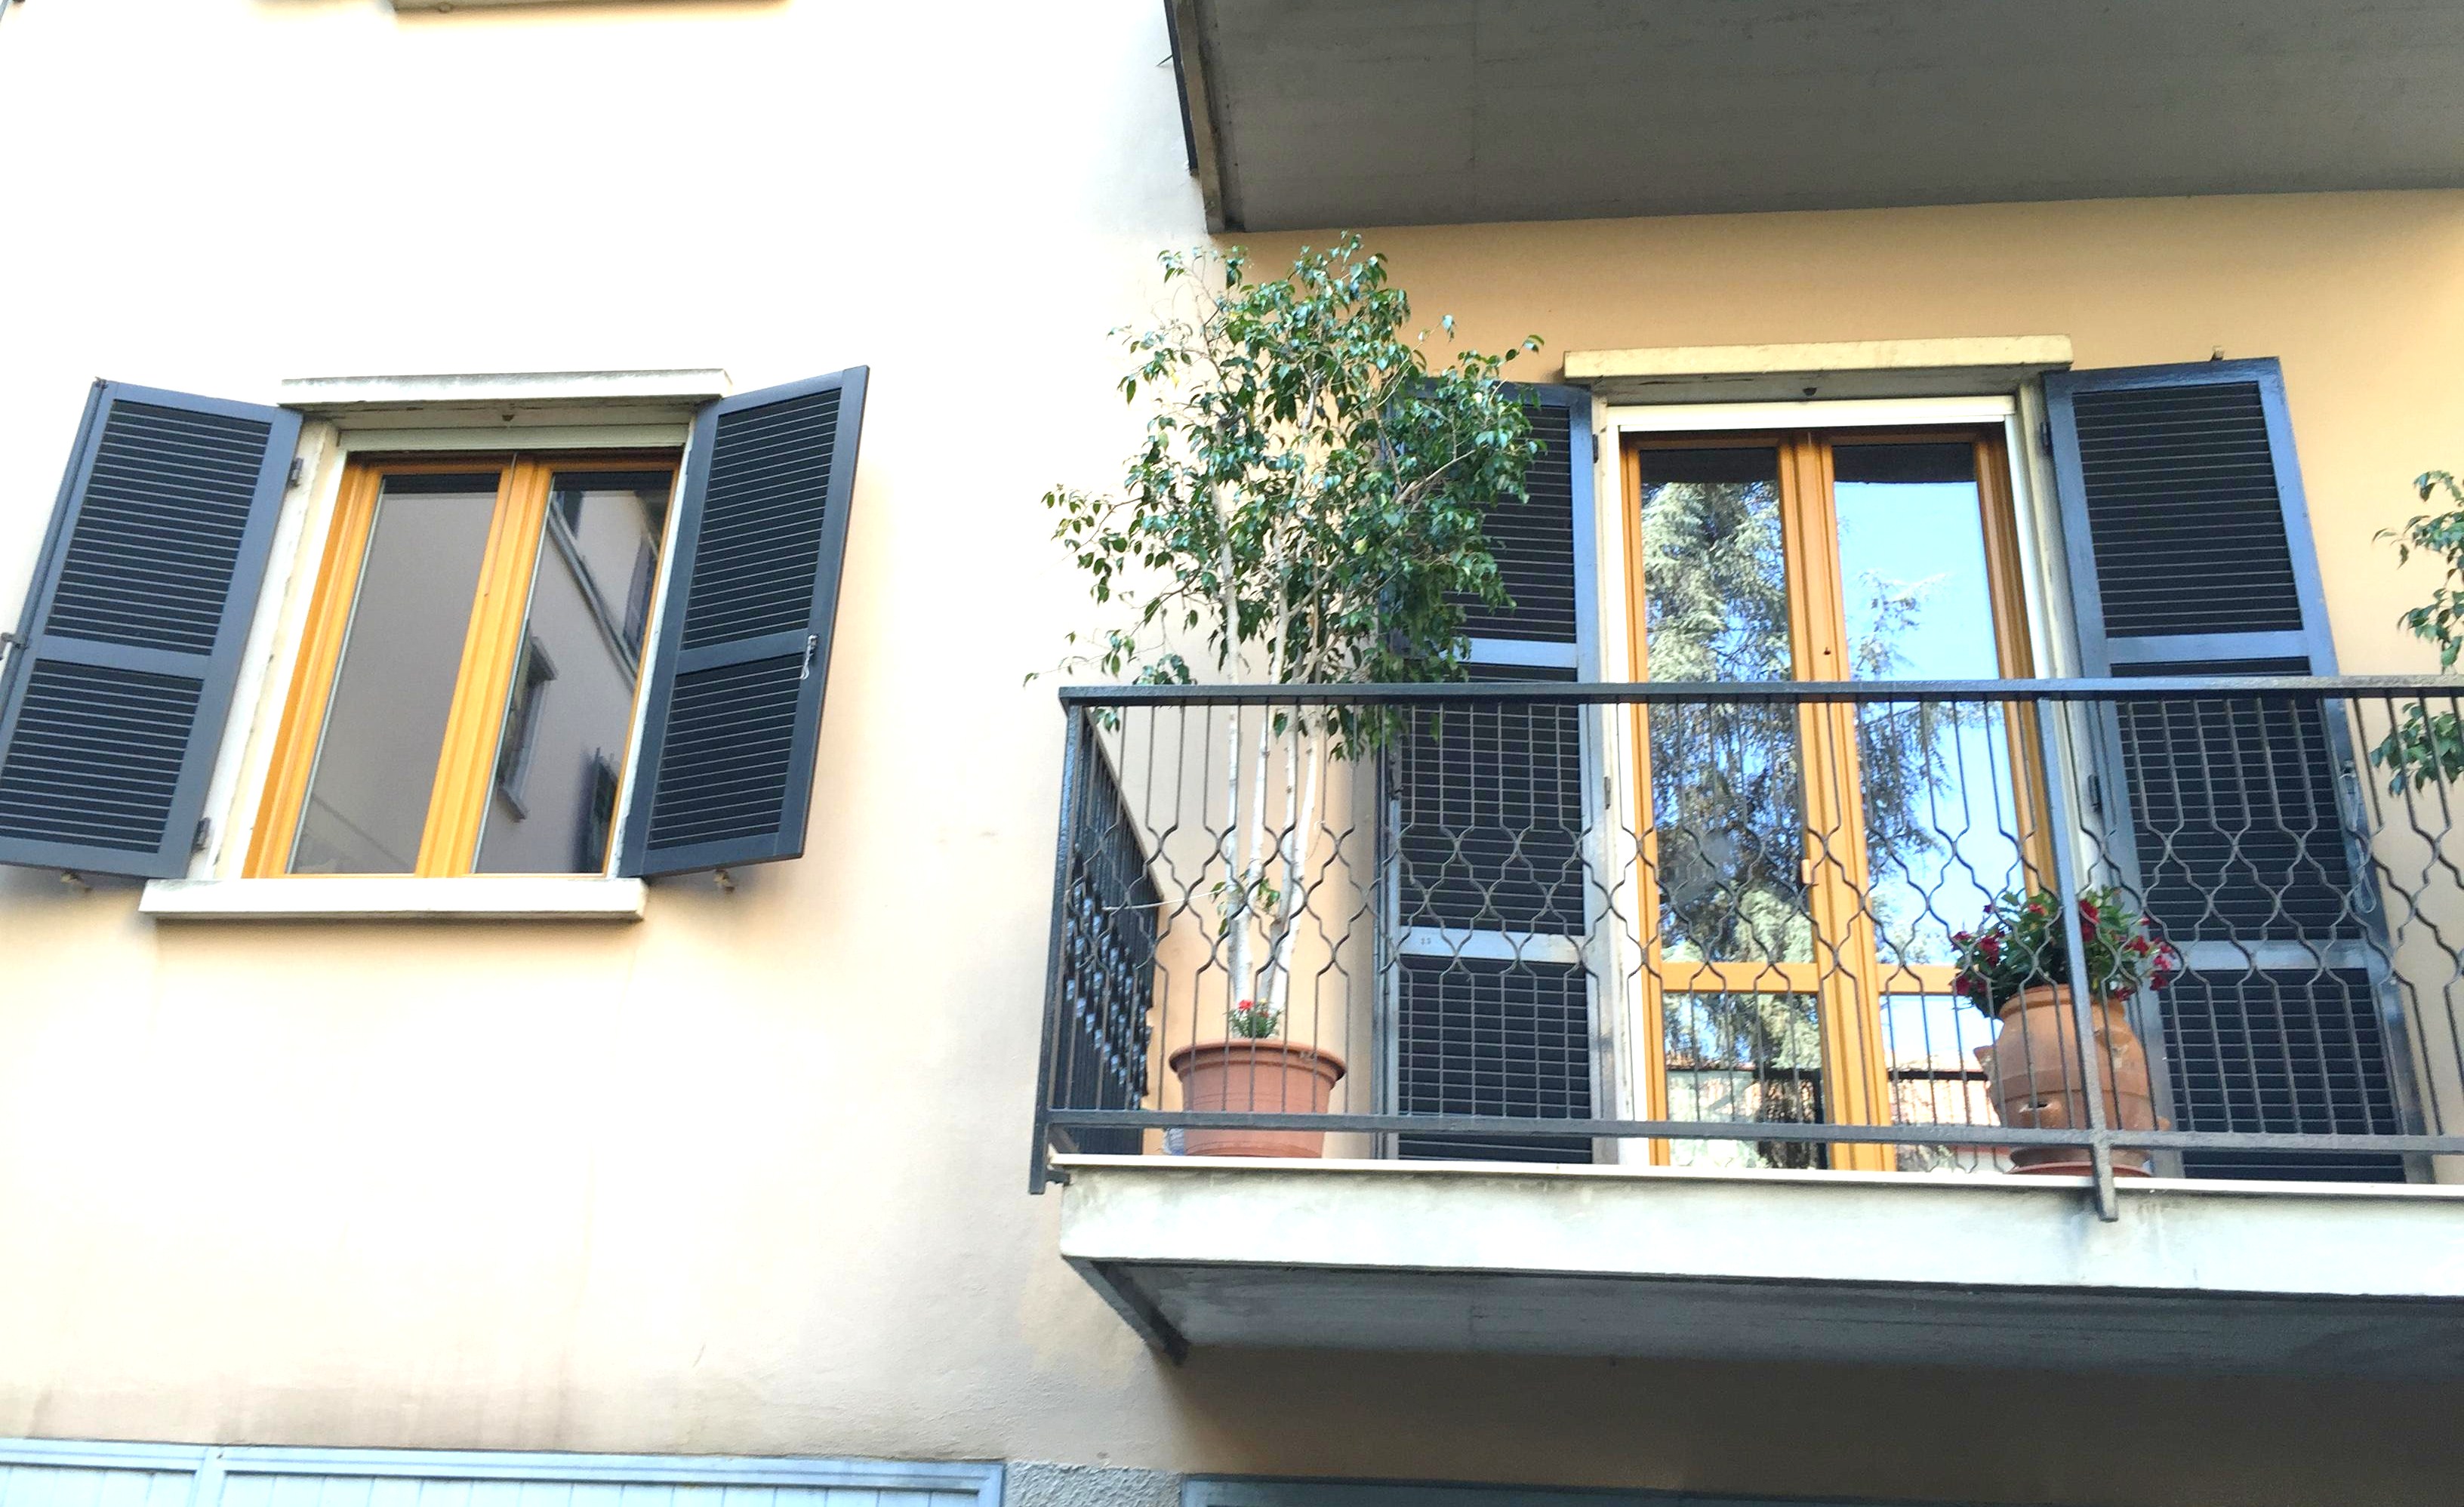 Sostituzione serramenti in PVC bicolore , abitazione a Cremona.